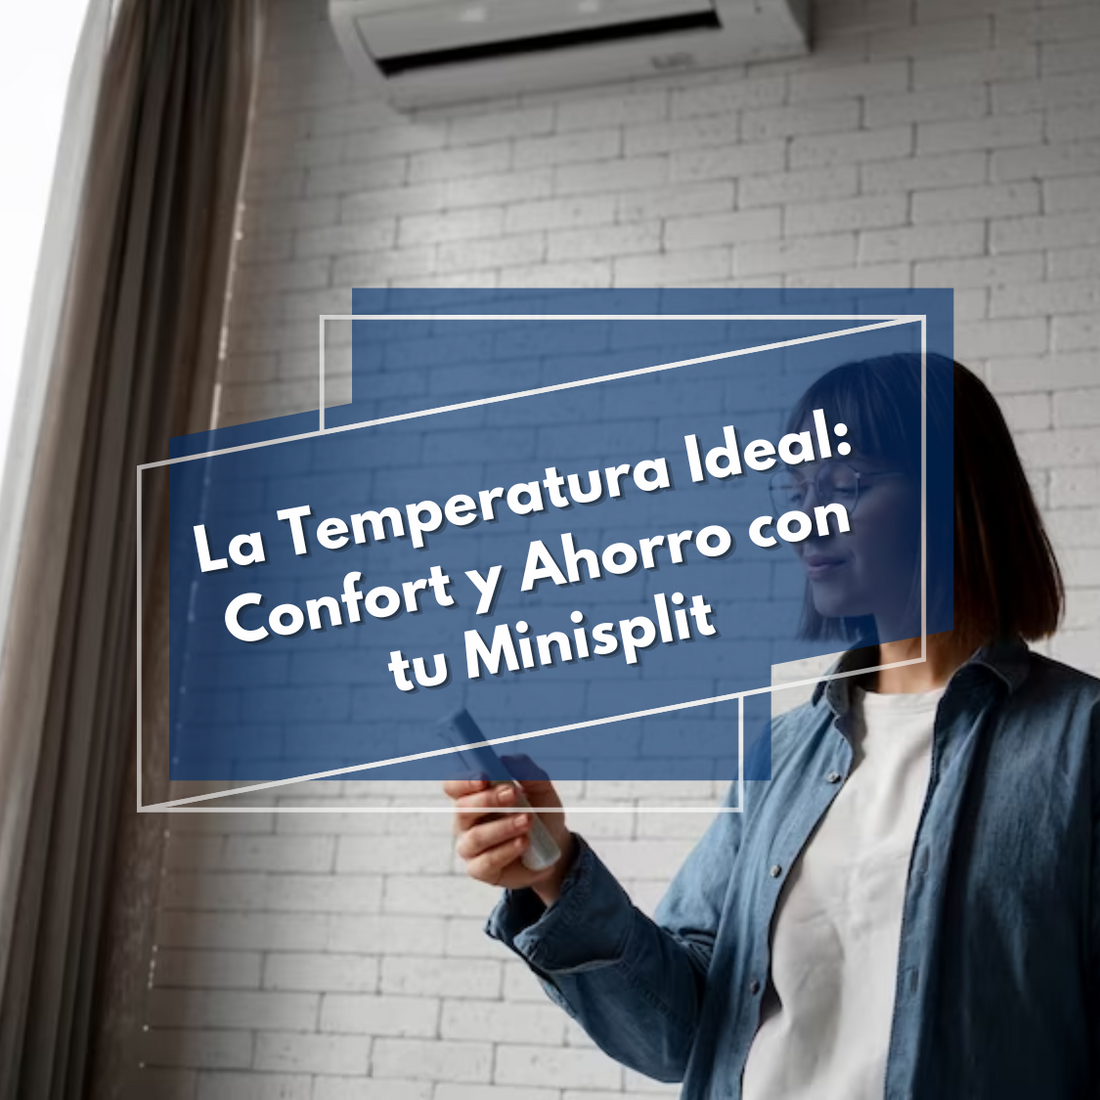 La Temperatura Ideal: Confort y Ahorro con tu Minisplit